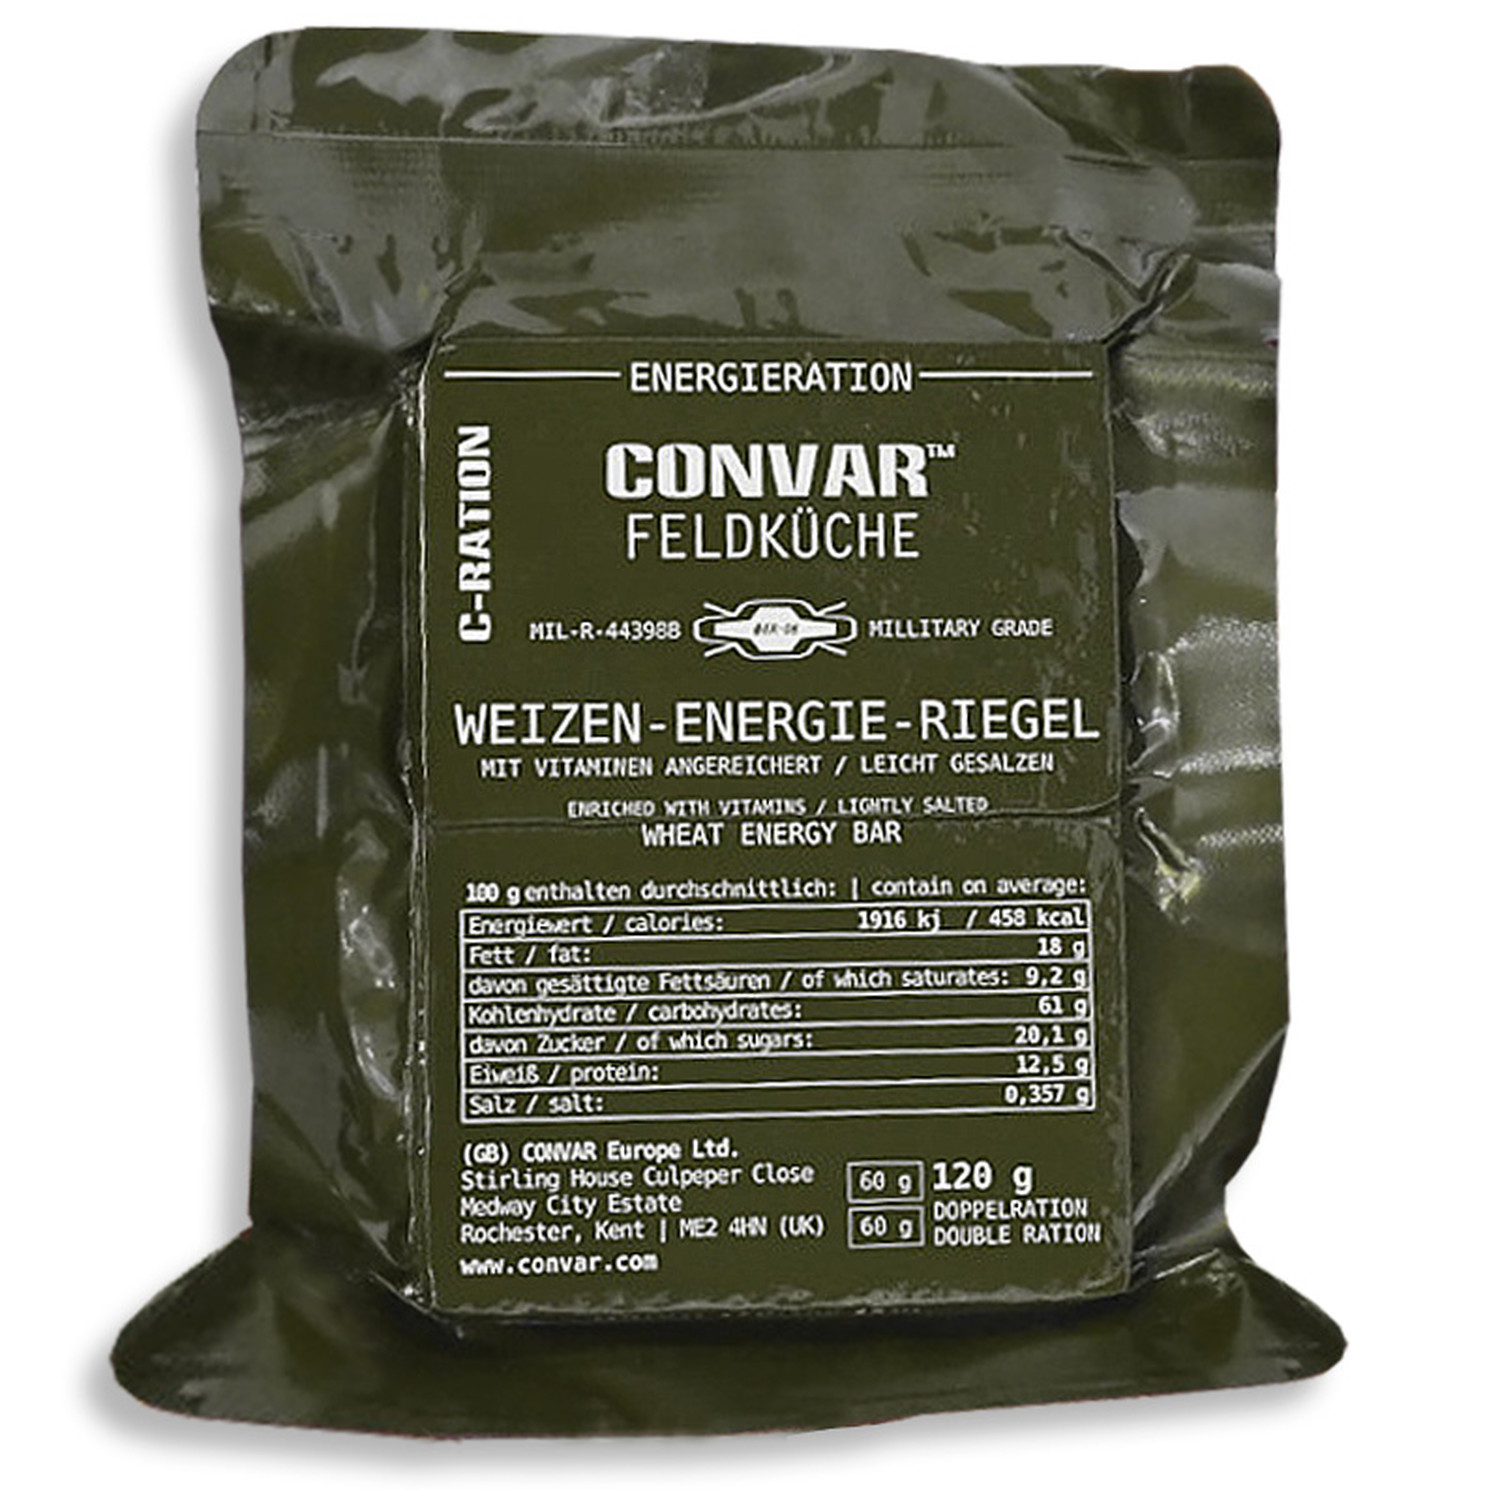 Convar Feldküche Weizen-Energie-Riegel - Salty 120 g Military Grade